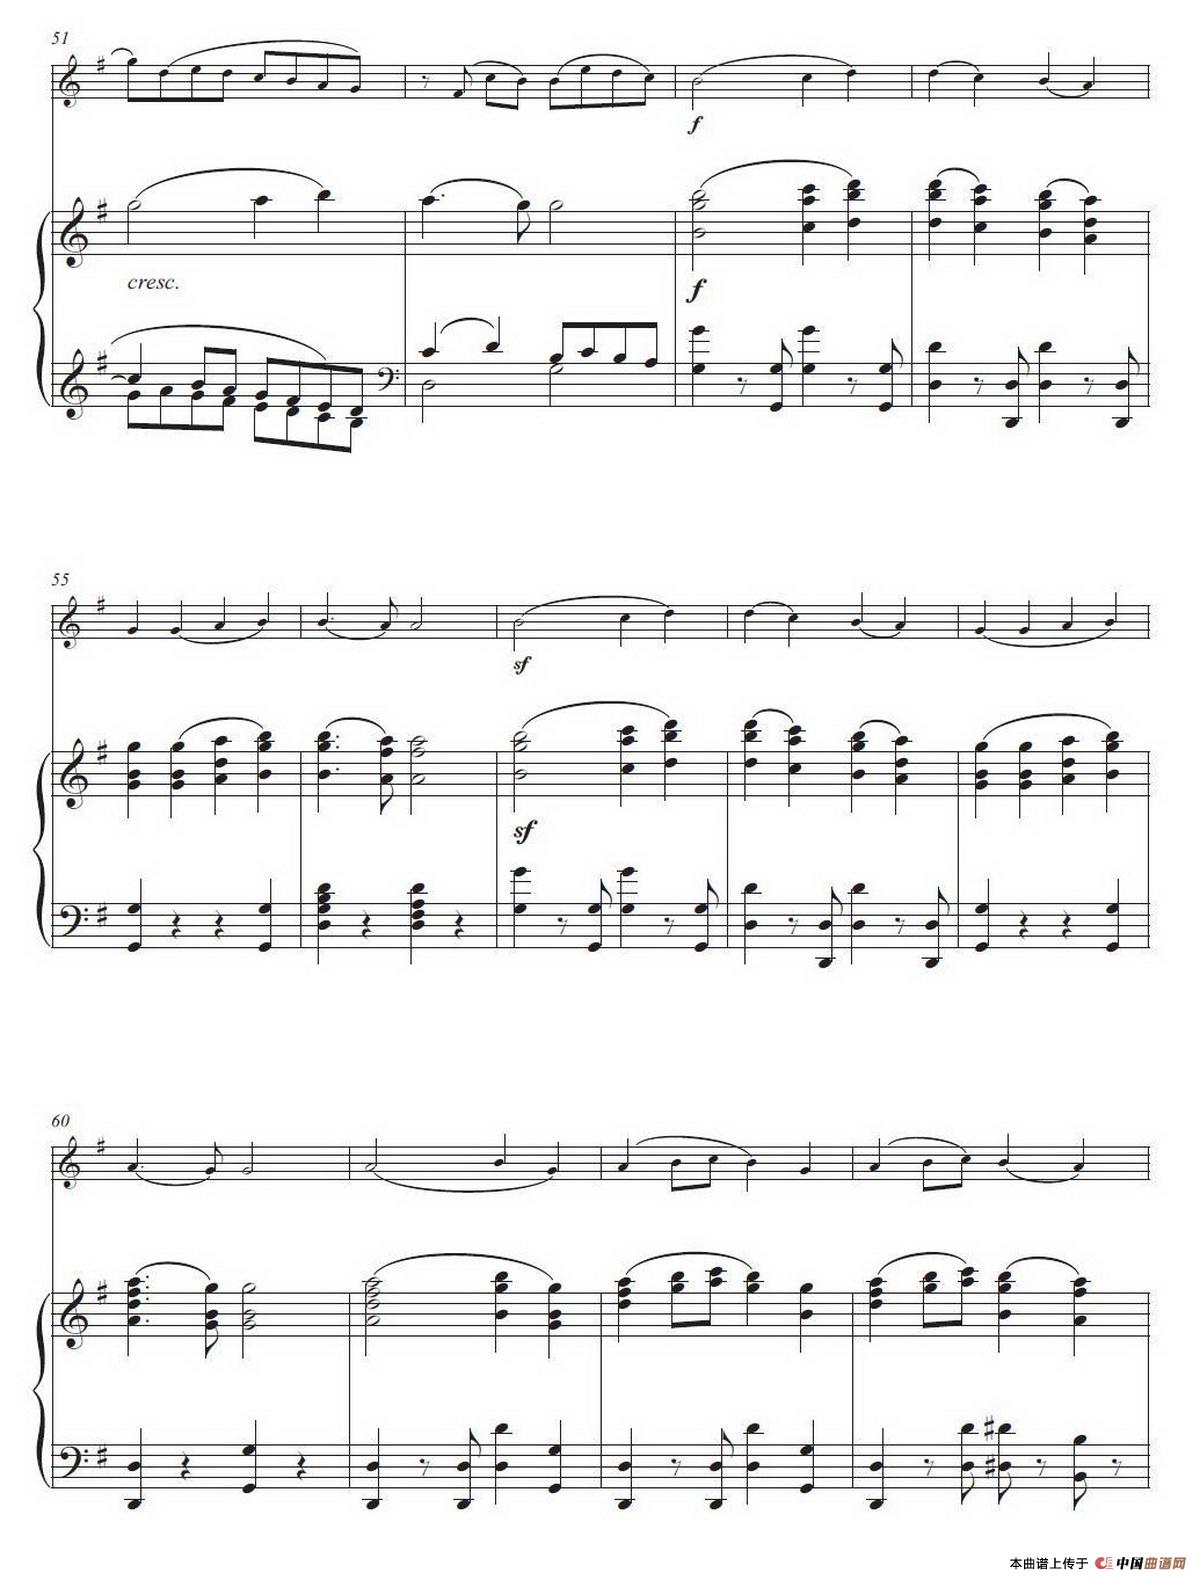 钢琴简谱欢乐颂_欢乐颂简谱钢琴双手(3)